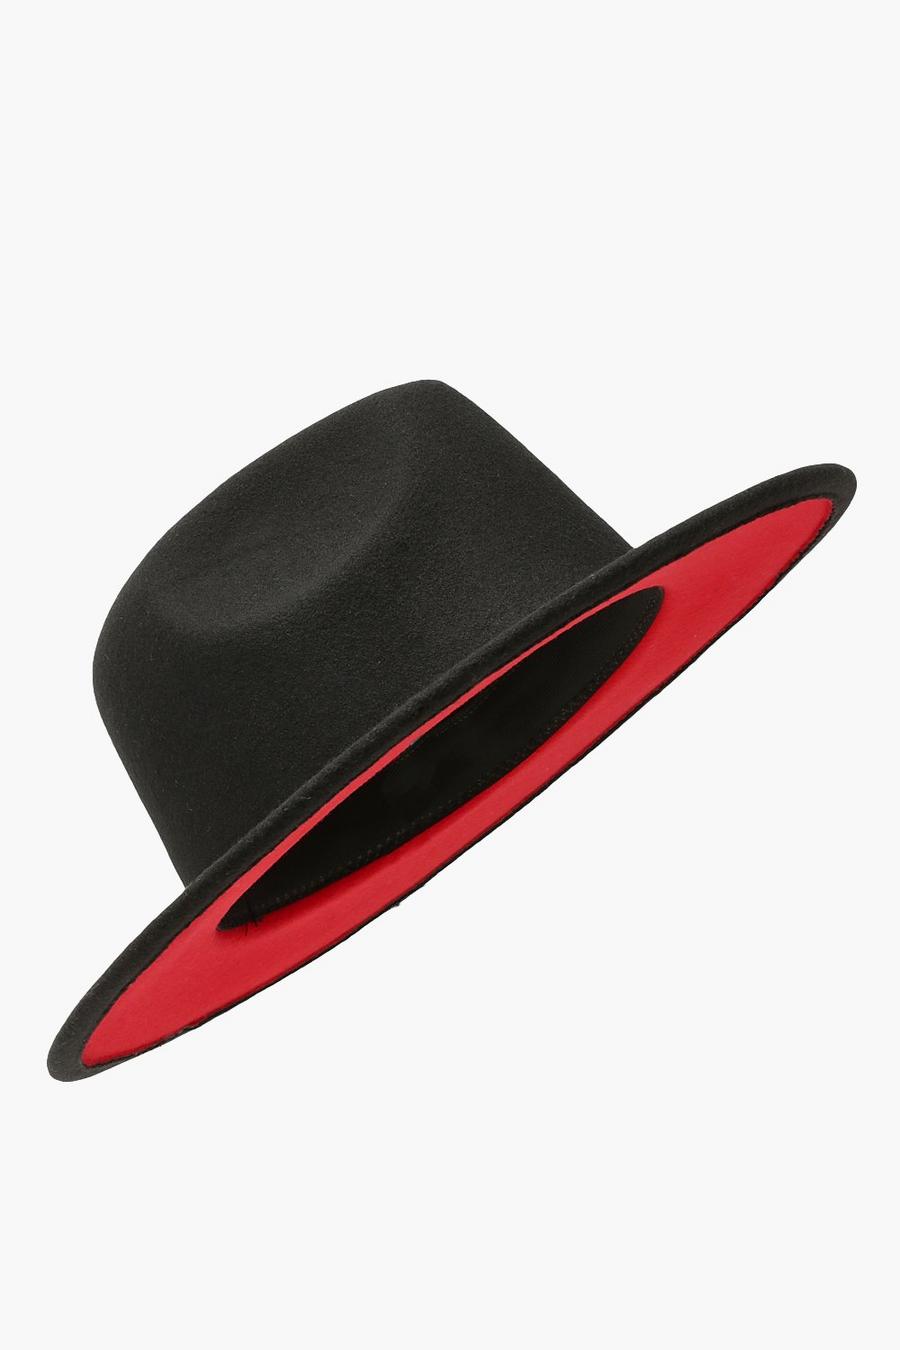 Sombrero con forro interior rojo, Negro